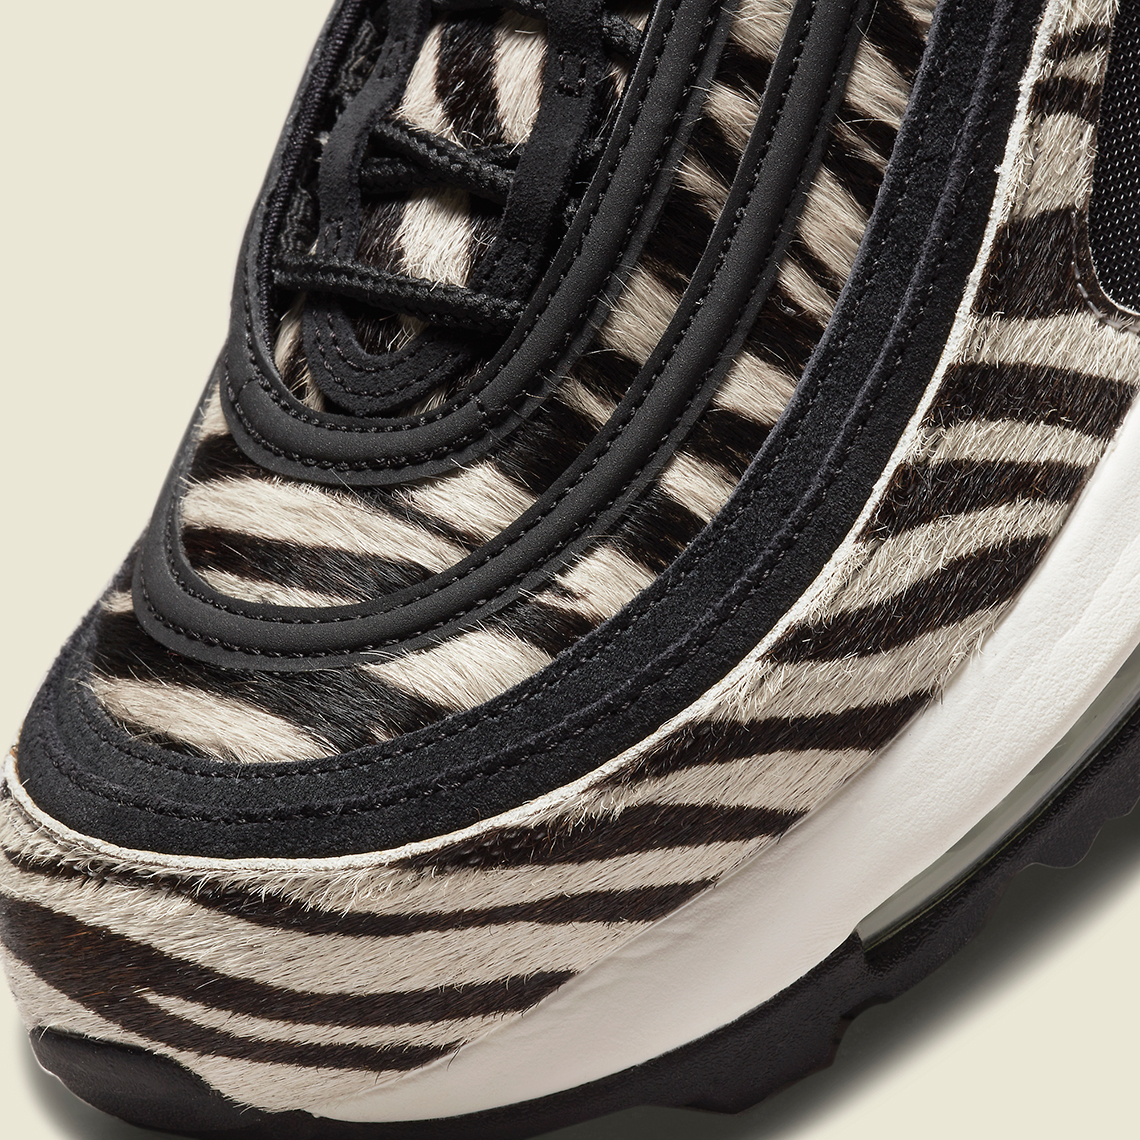 Nike Air Max 97 Golf Zebra Dh1313 001 Release Date 5